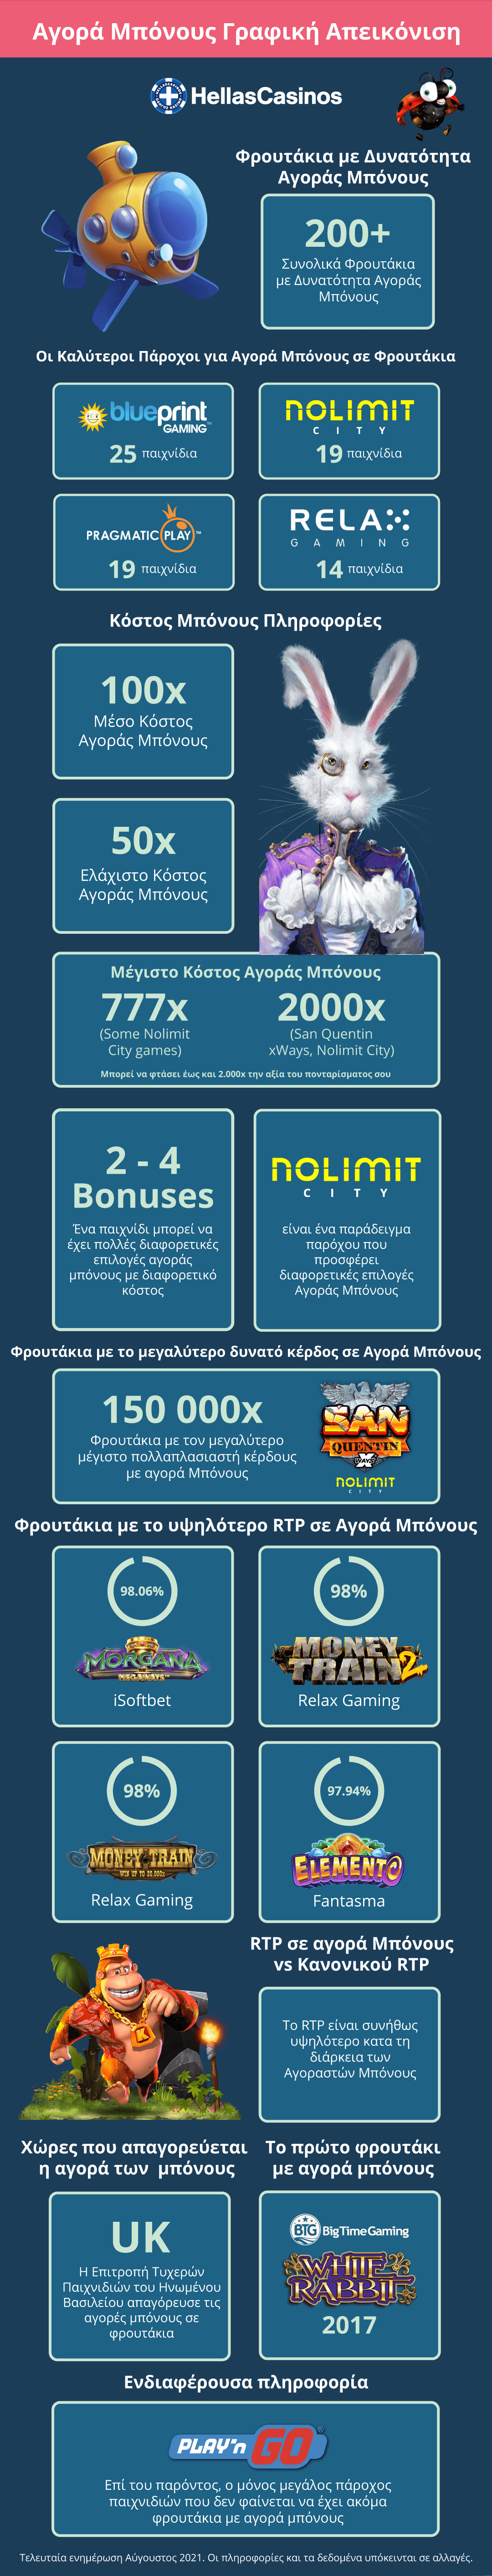 Bonus Buy Slots infographic